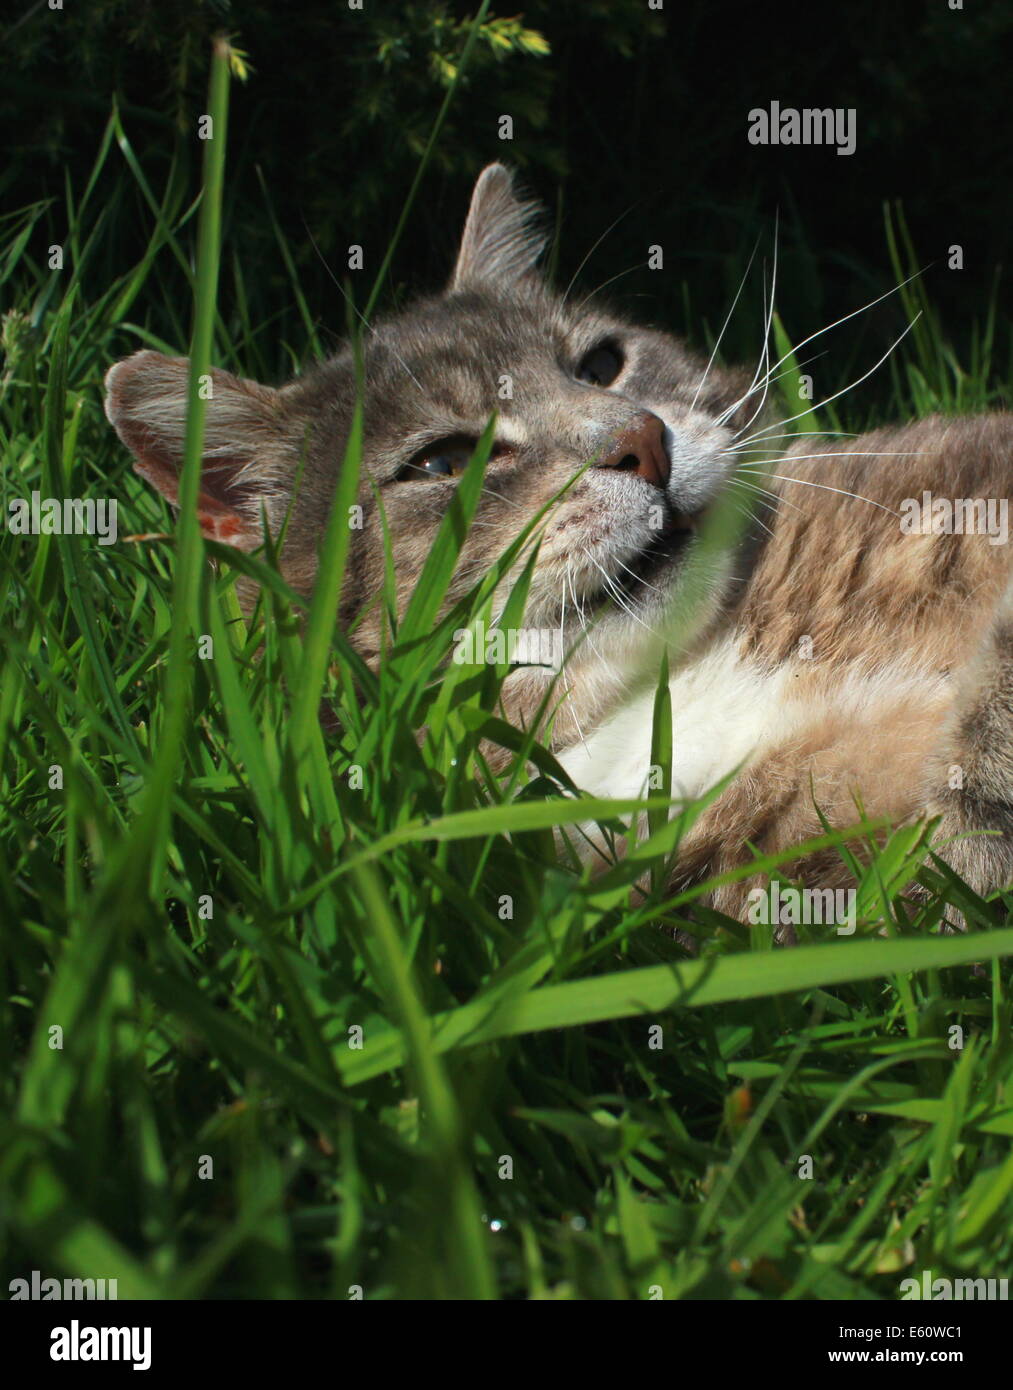 Gato atigrado jugando con ratón de juguete Foto de stock